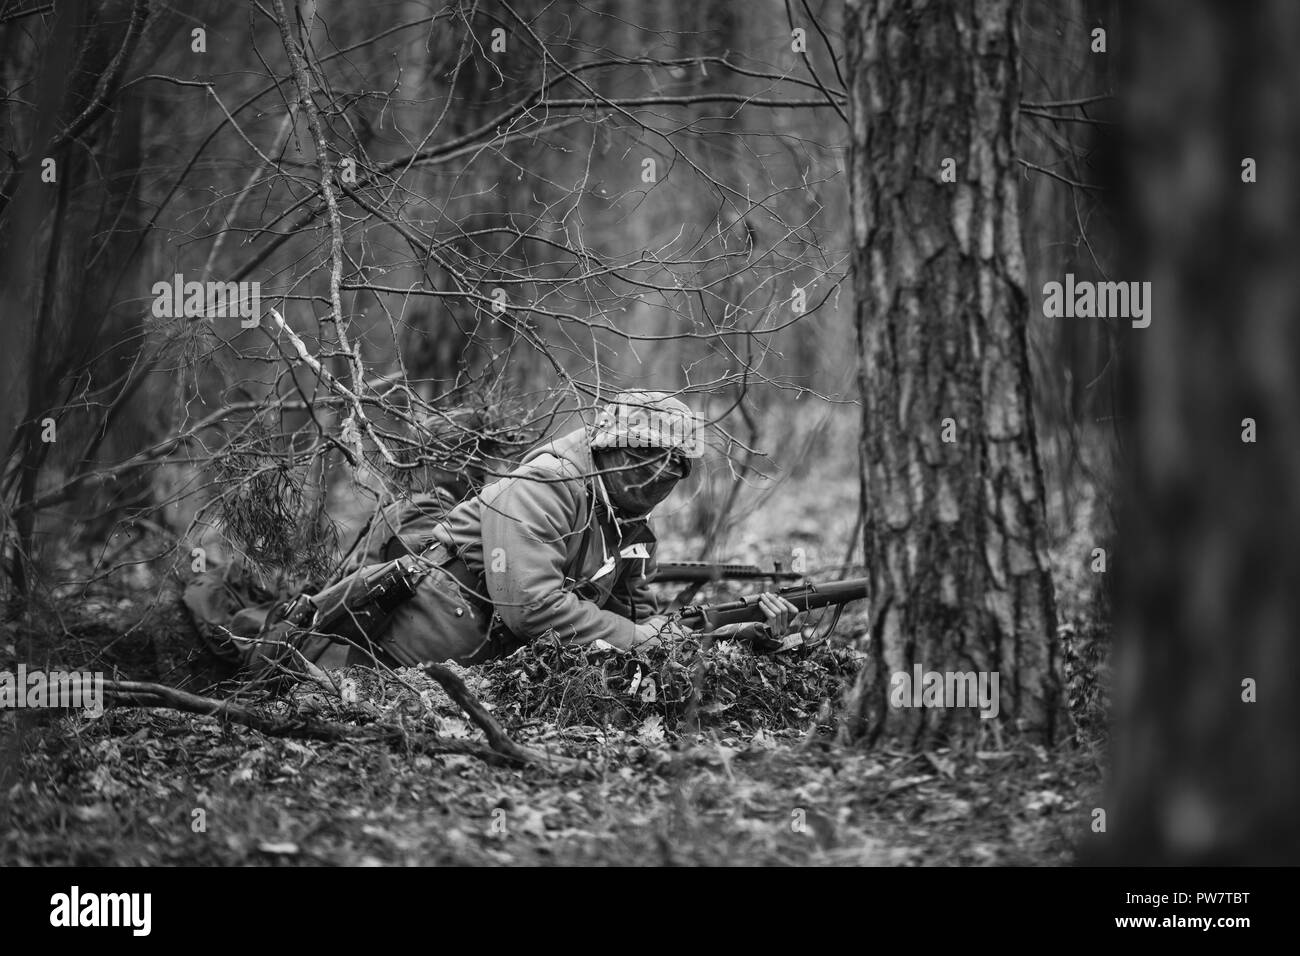 Versteckte unbekannte Re-Enactor gekleidet, wie Deutsche Wehrmacht Soldat ein Gewehr auf gegnerische vom Boden zum Ziel haben. Foto in den Farben Schwarz und Weiß. Stockfoto